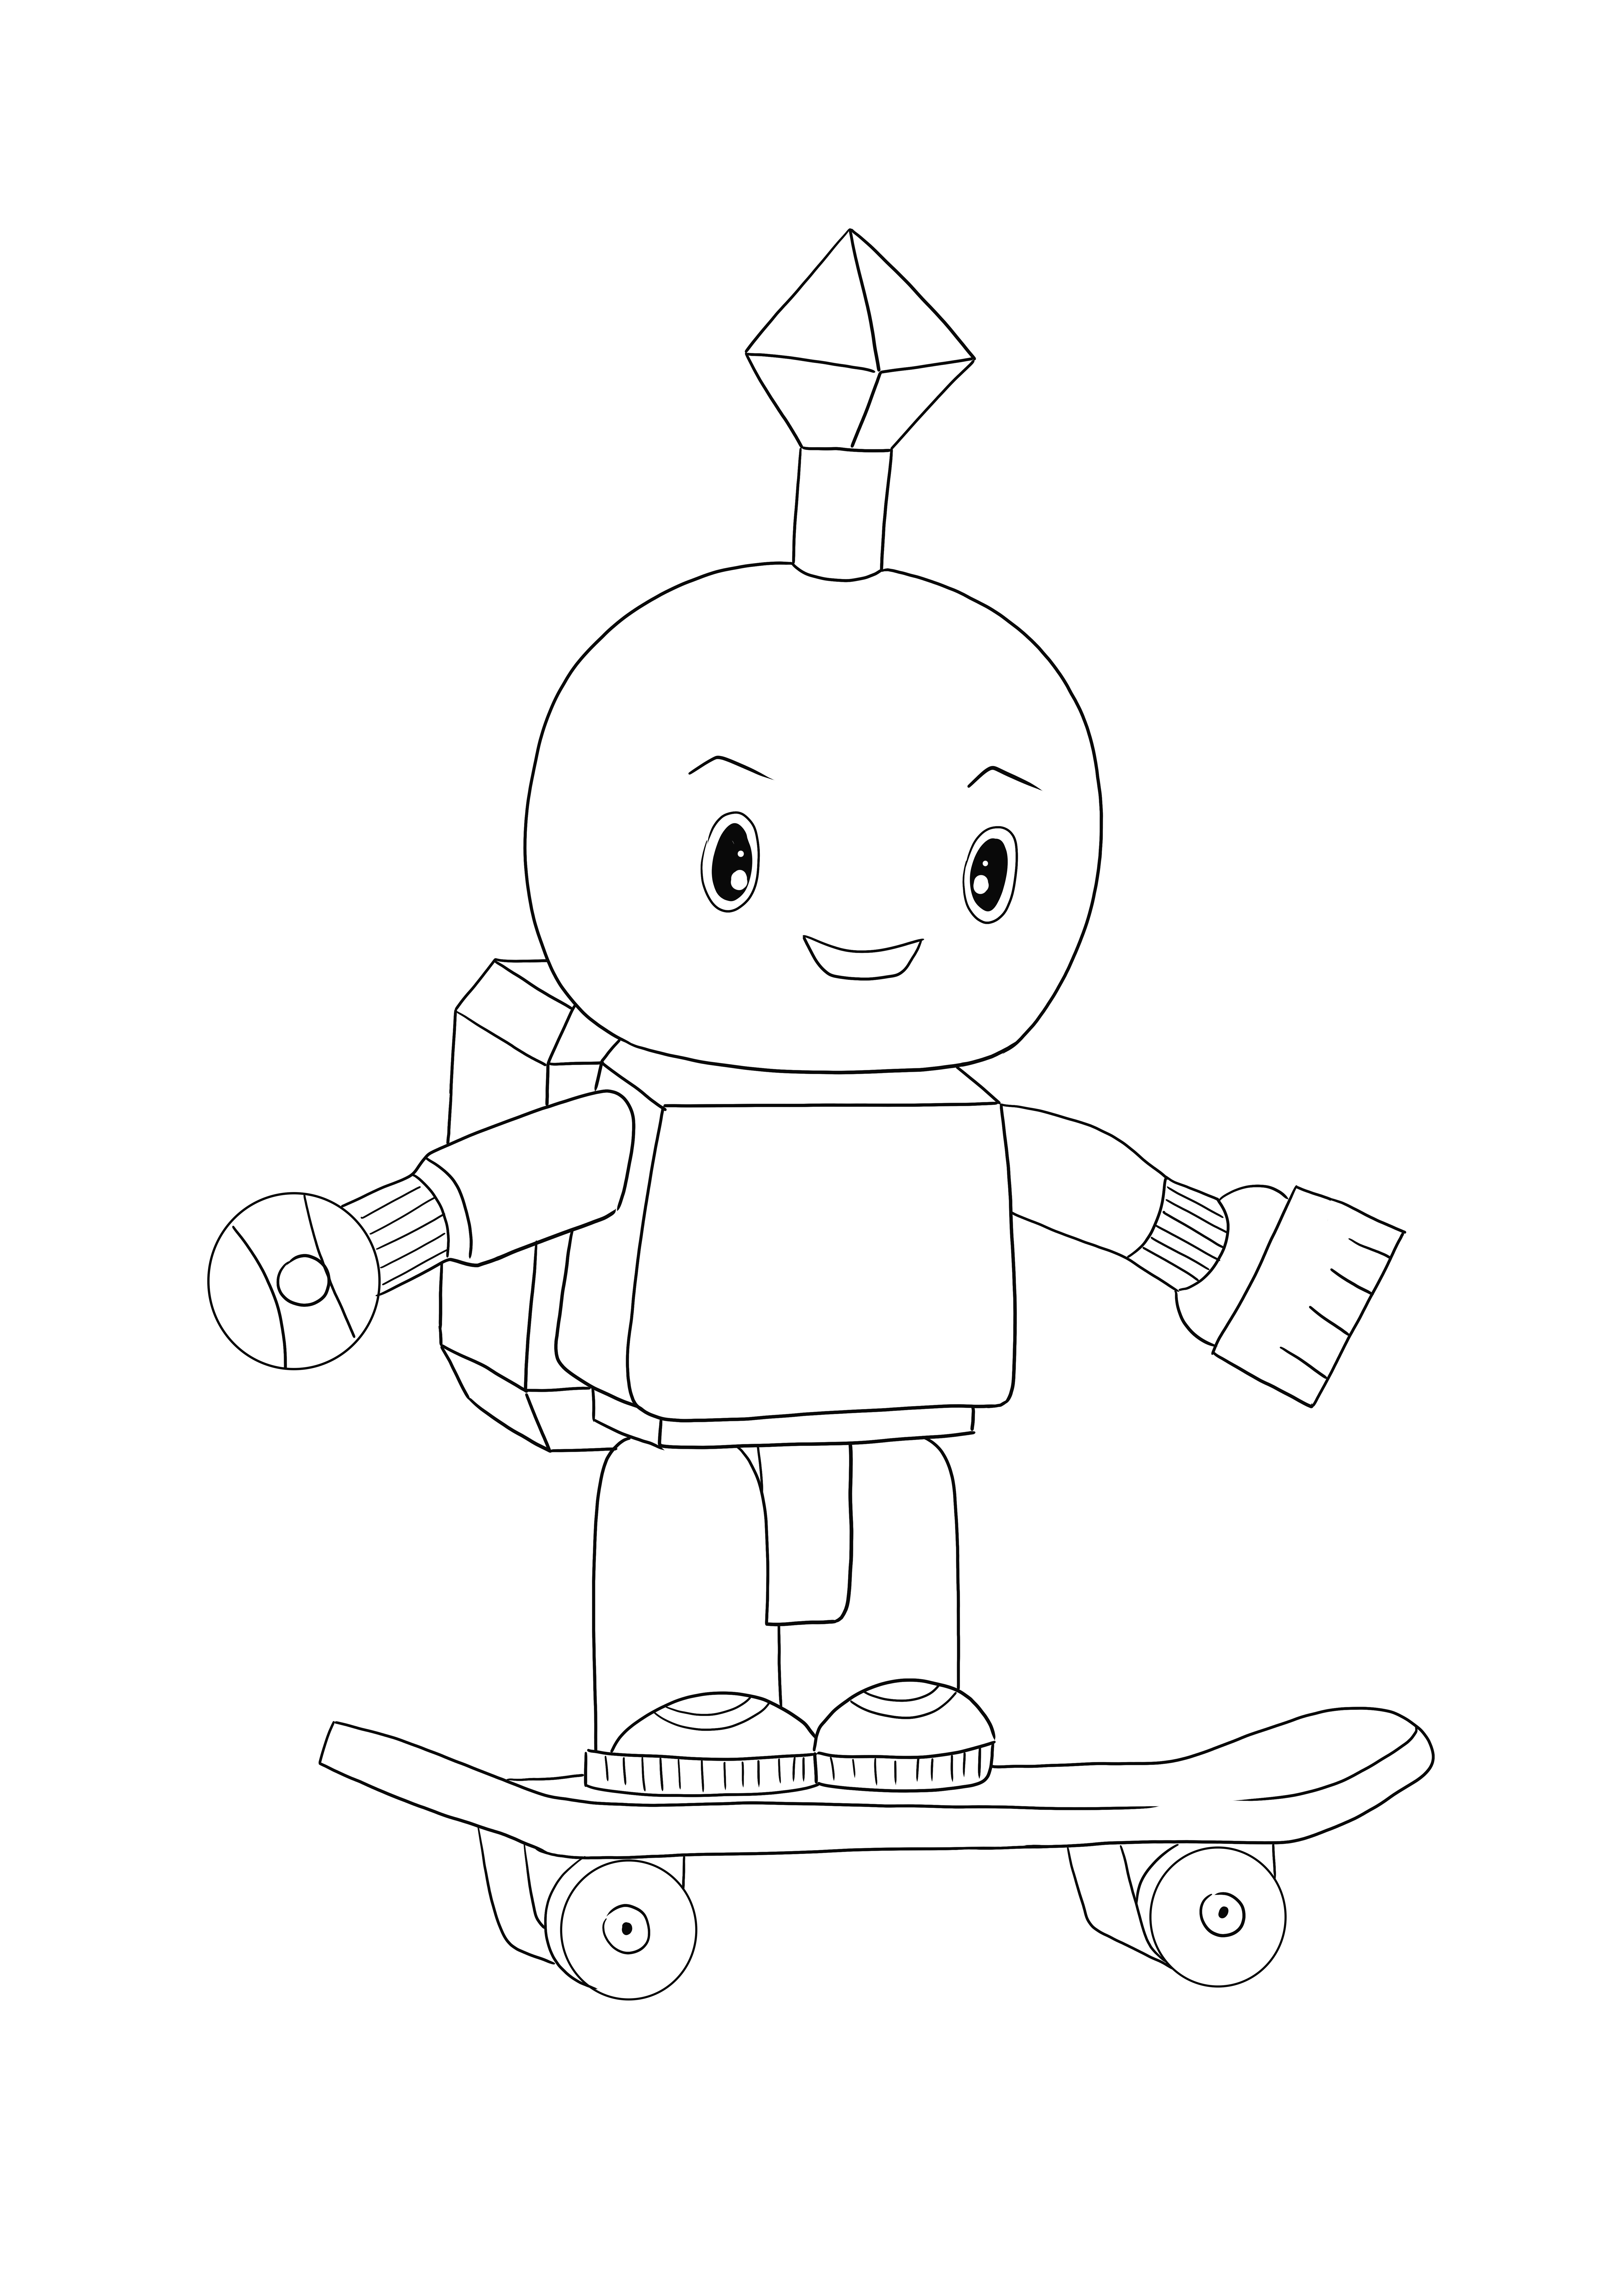 Roblox Robot se puede descargar gratis y es una imagen en color para los amantes de los robots.